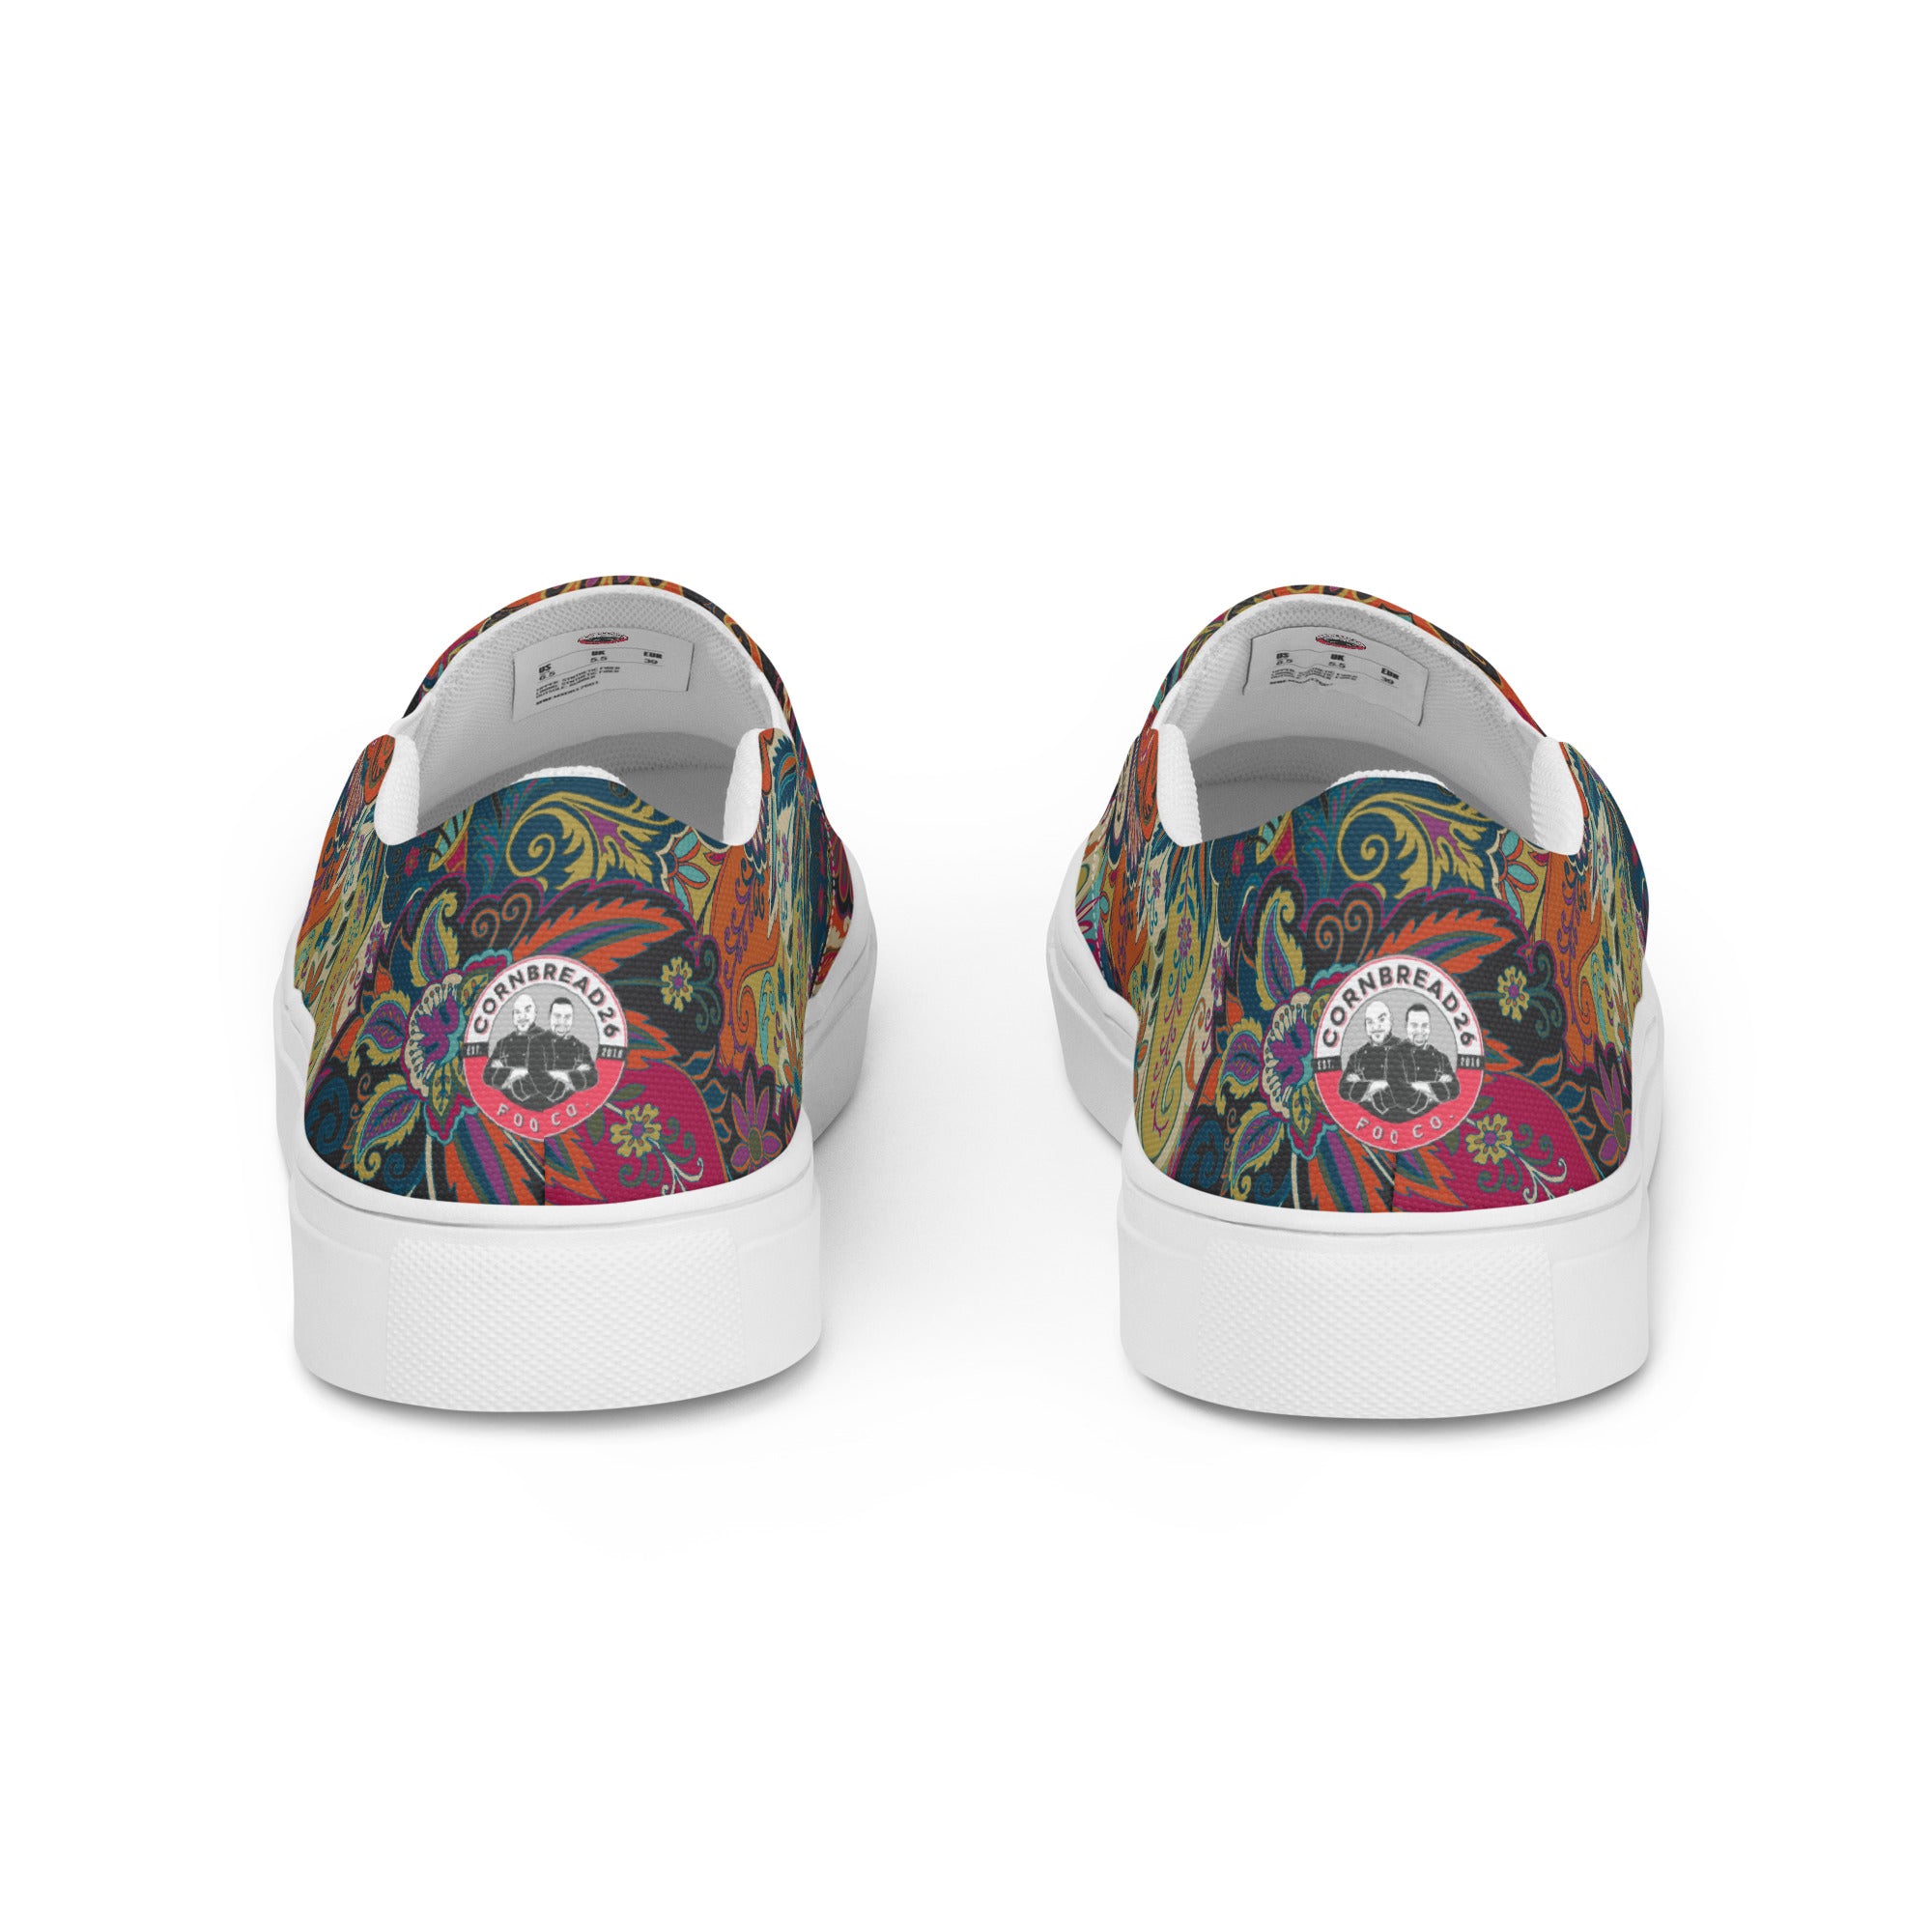 Men’s Paisley Logo Slip-On Canvas Shoes - THE CORNBREAD KITCHEN SHOP